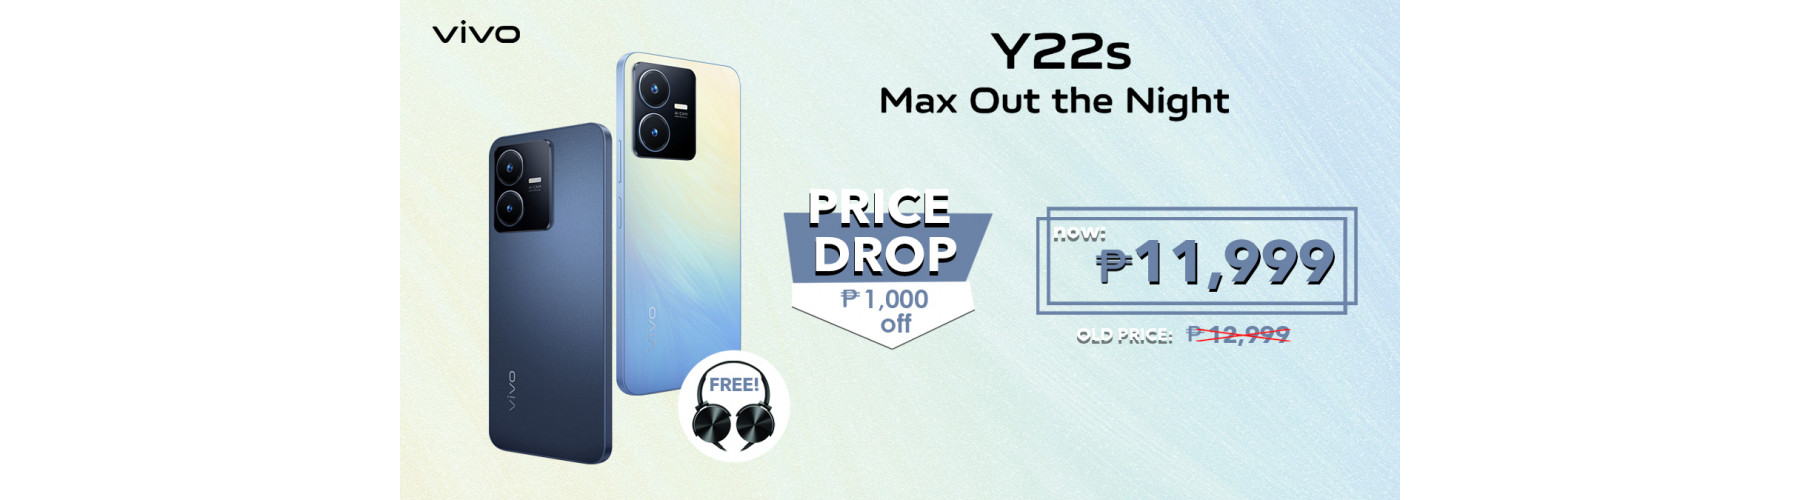 Y22s Price Drop